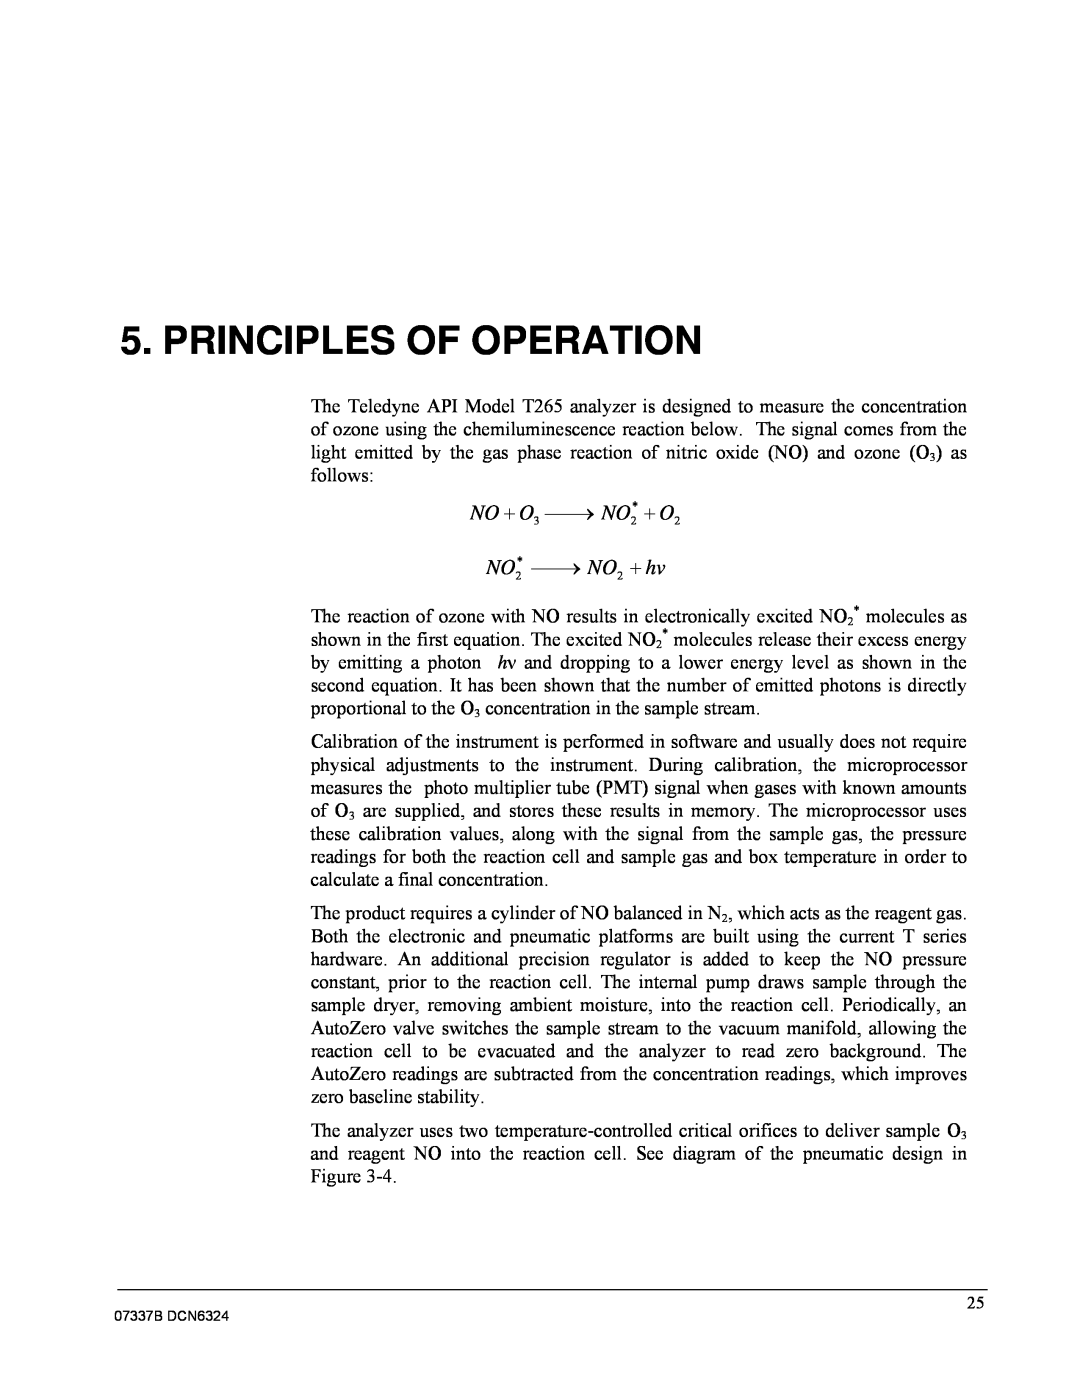 Teledyne T265 manual Principles Of Operation, NO  O3  NO2*  O2, NO2*  NO2  hv 